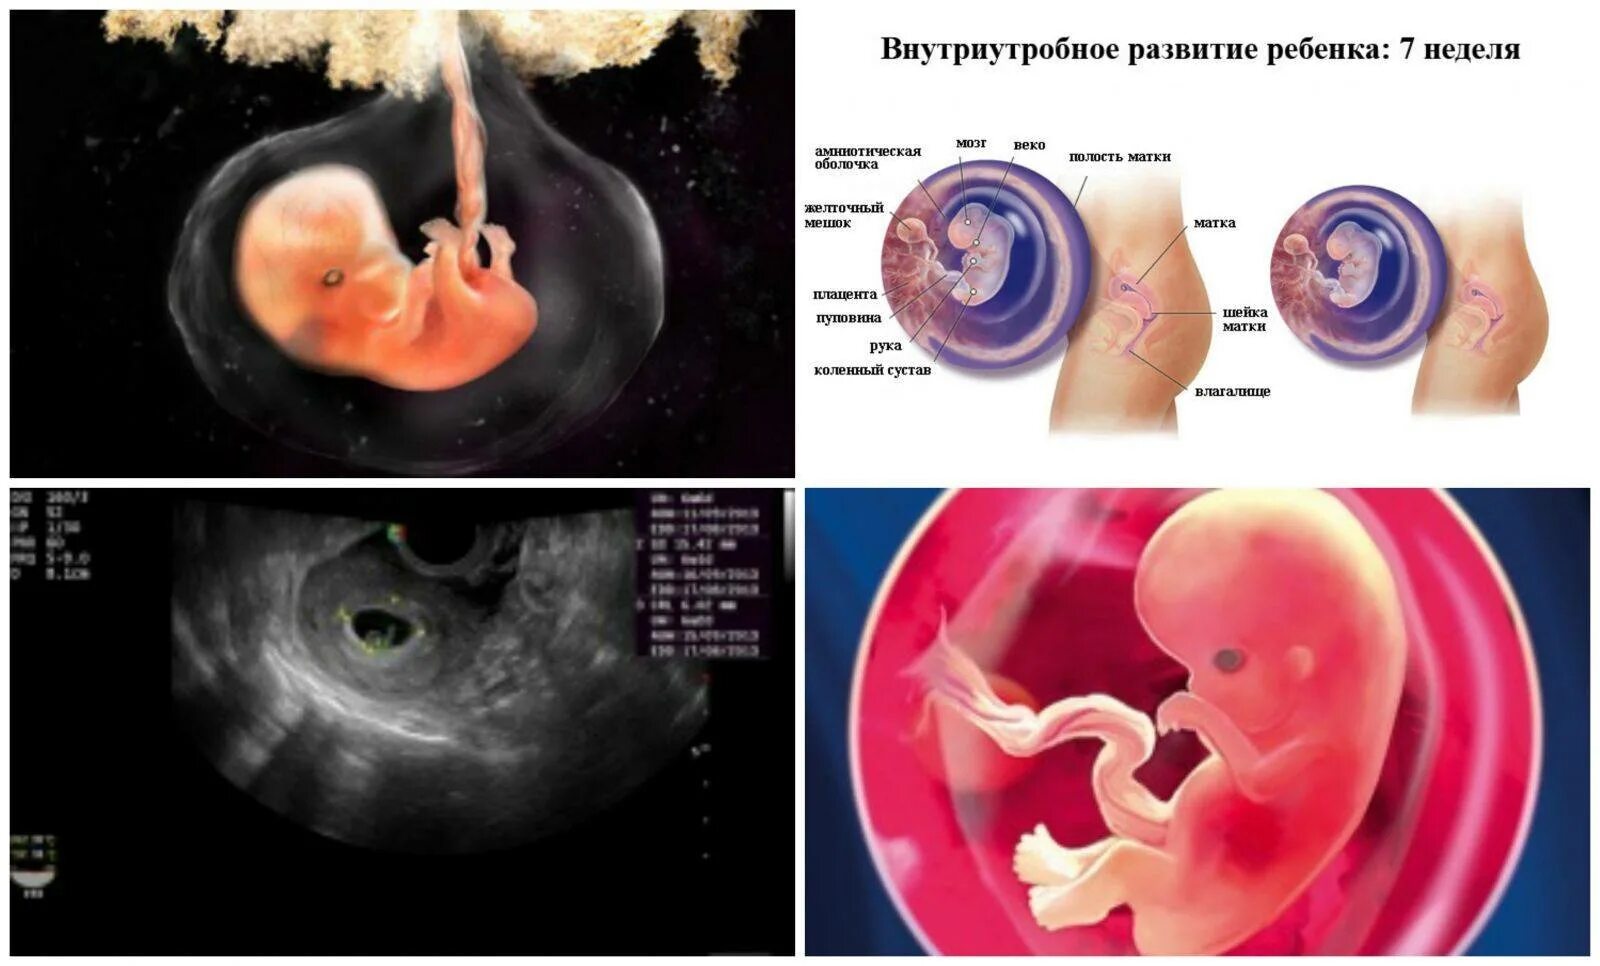 Токсикоз на 6 неделе. Эмбрион по неделям беременности 6-7 недель. Плод эмбриона на 7 неделе беременности. Эмбрион по неделям беременности 7 недель беременности. Фото эмбриона по неделям беременности 7 недель.